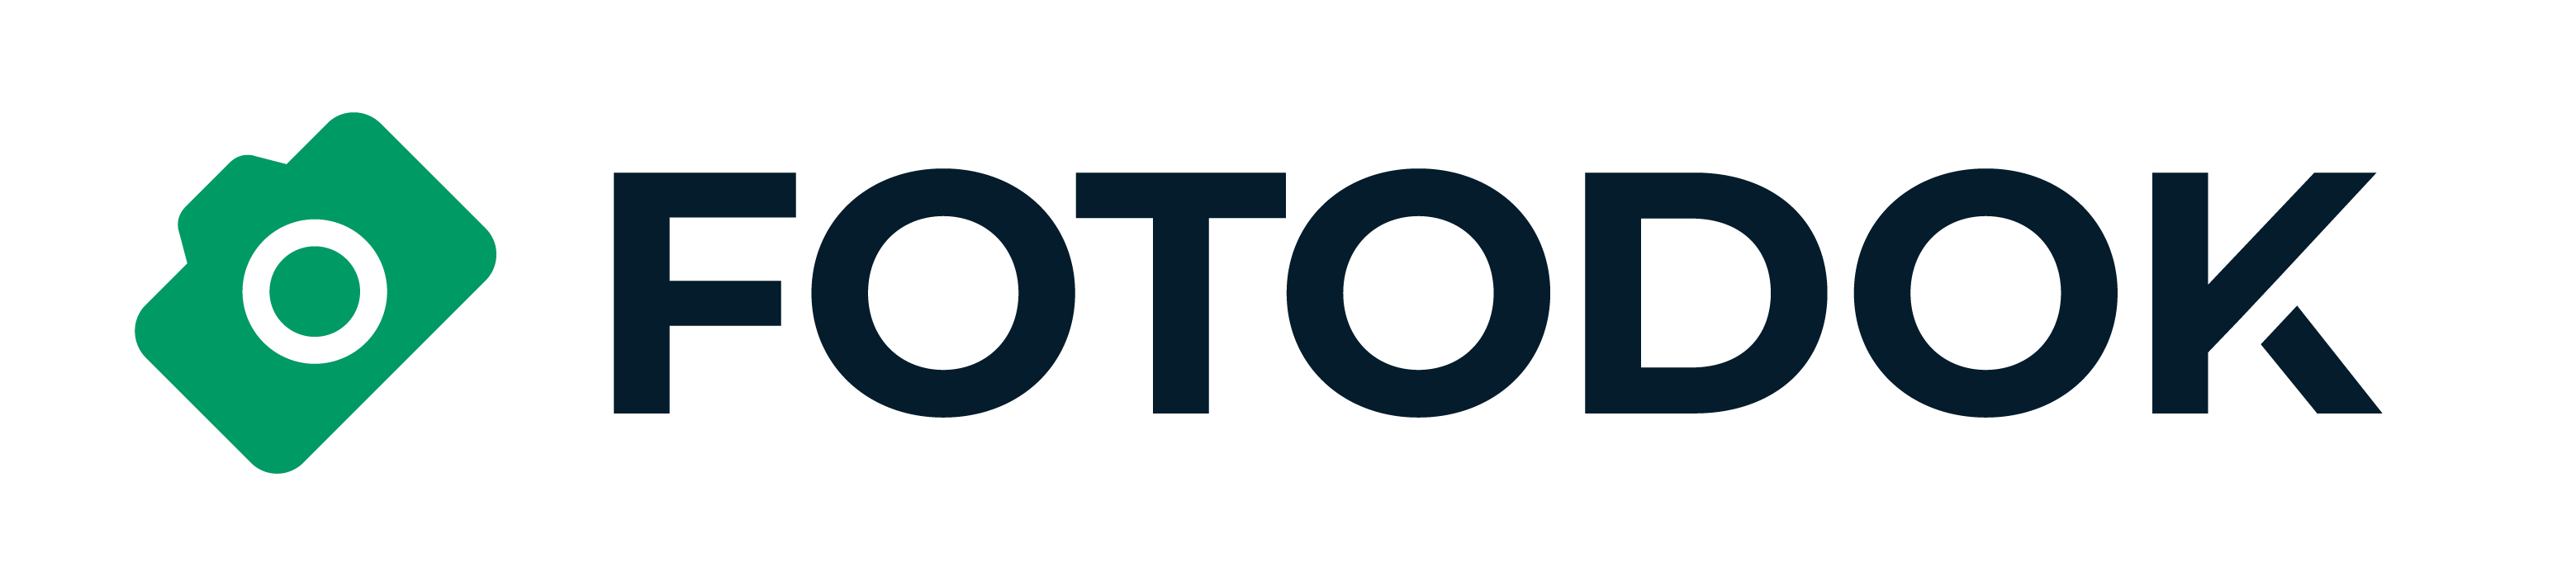 FotoDok Logo